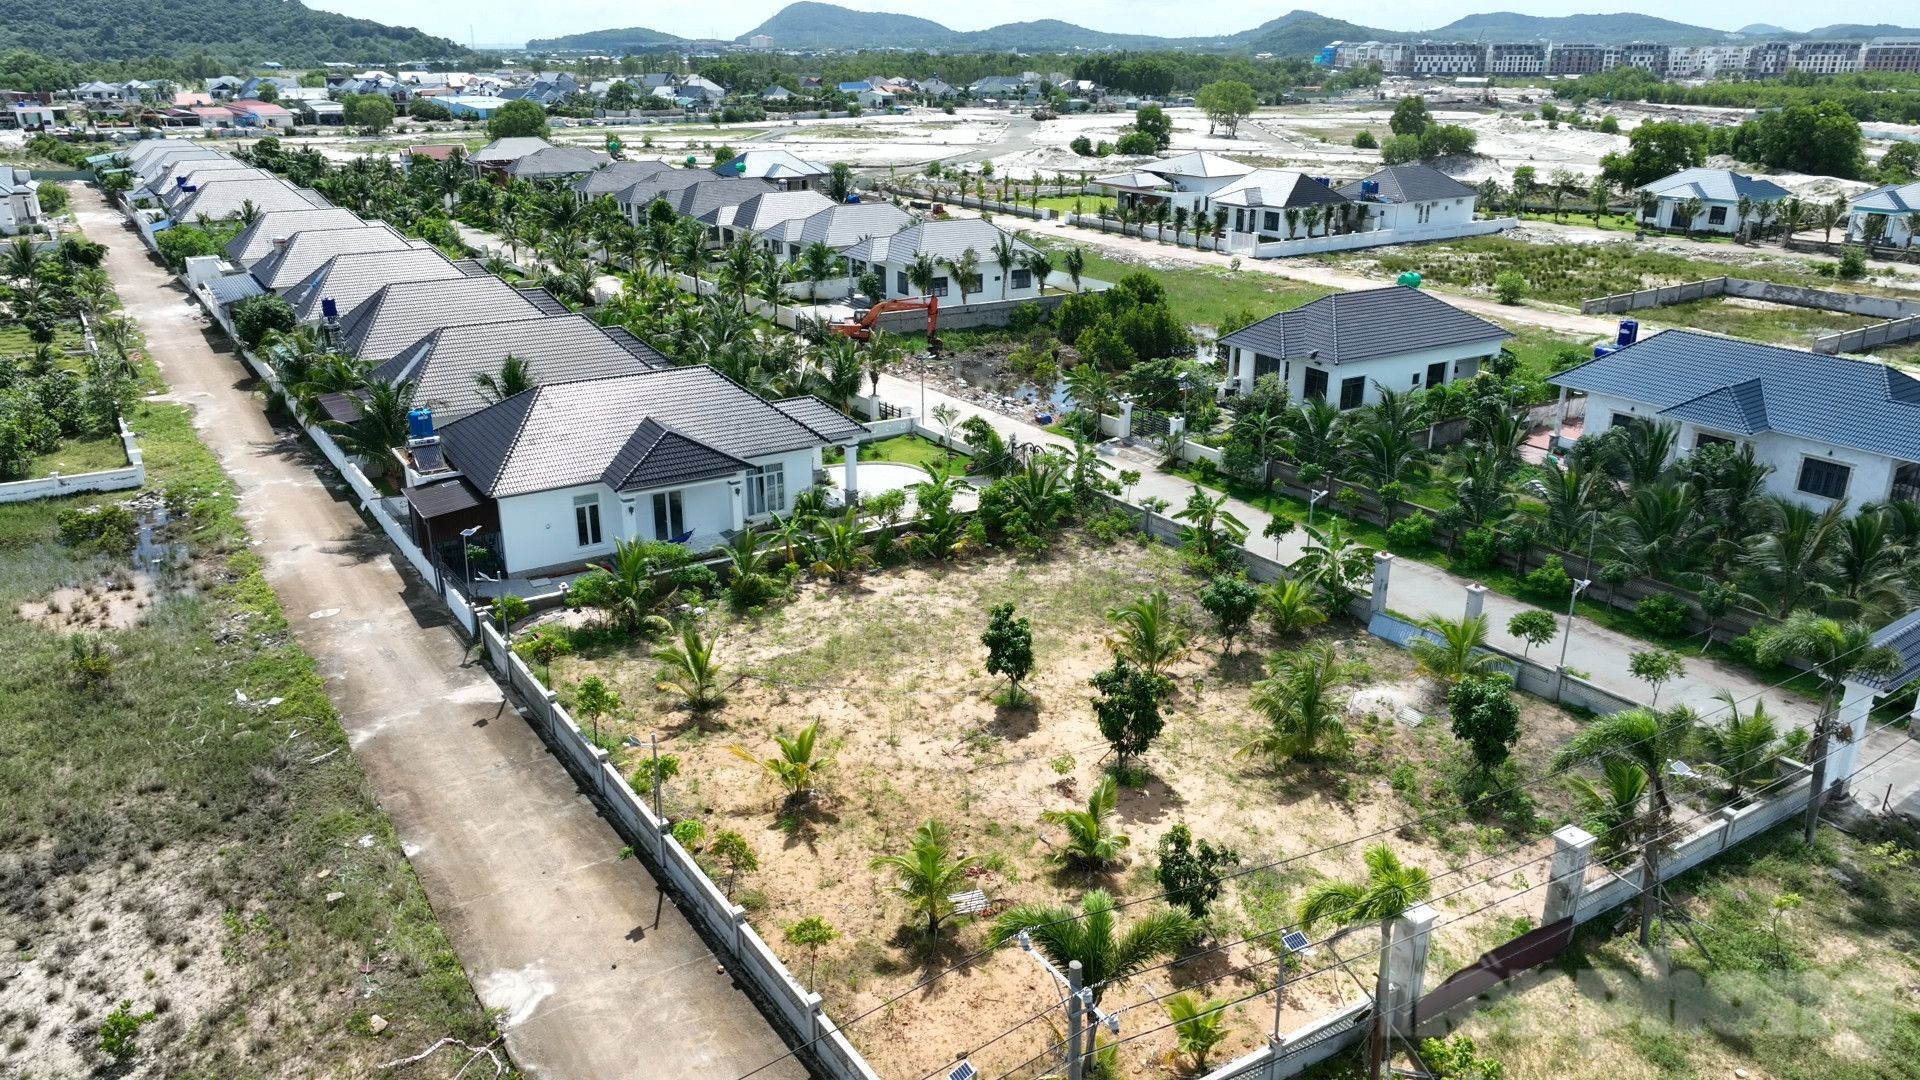 79 biệt thự xây dựng trái phép ở Phú Quốc, mới cưỡng chế phá dỡ được 2 căn - Ảnh 9.